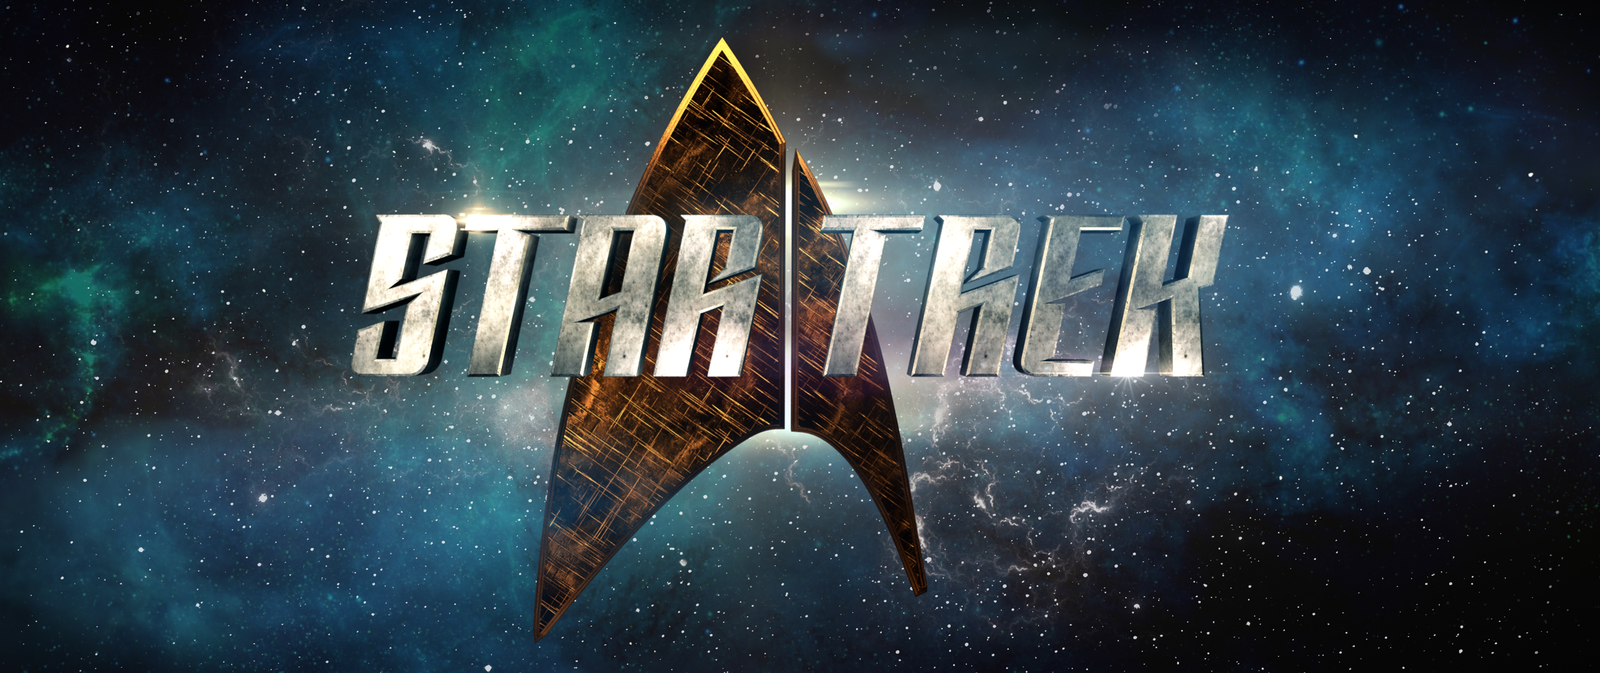 Star Trek on peekaboo - Star trek, Star Trek: Discovery, Captain Kirk, Spock